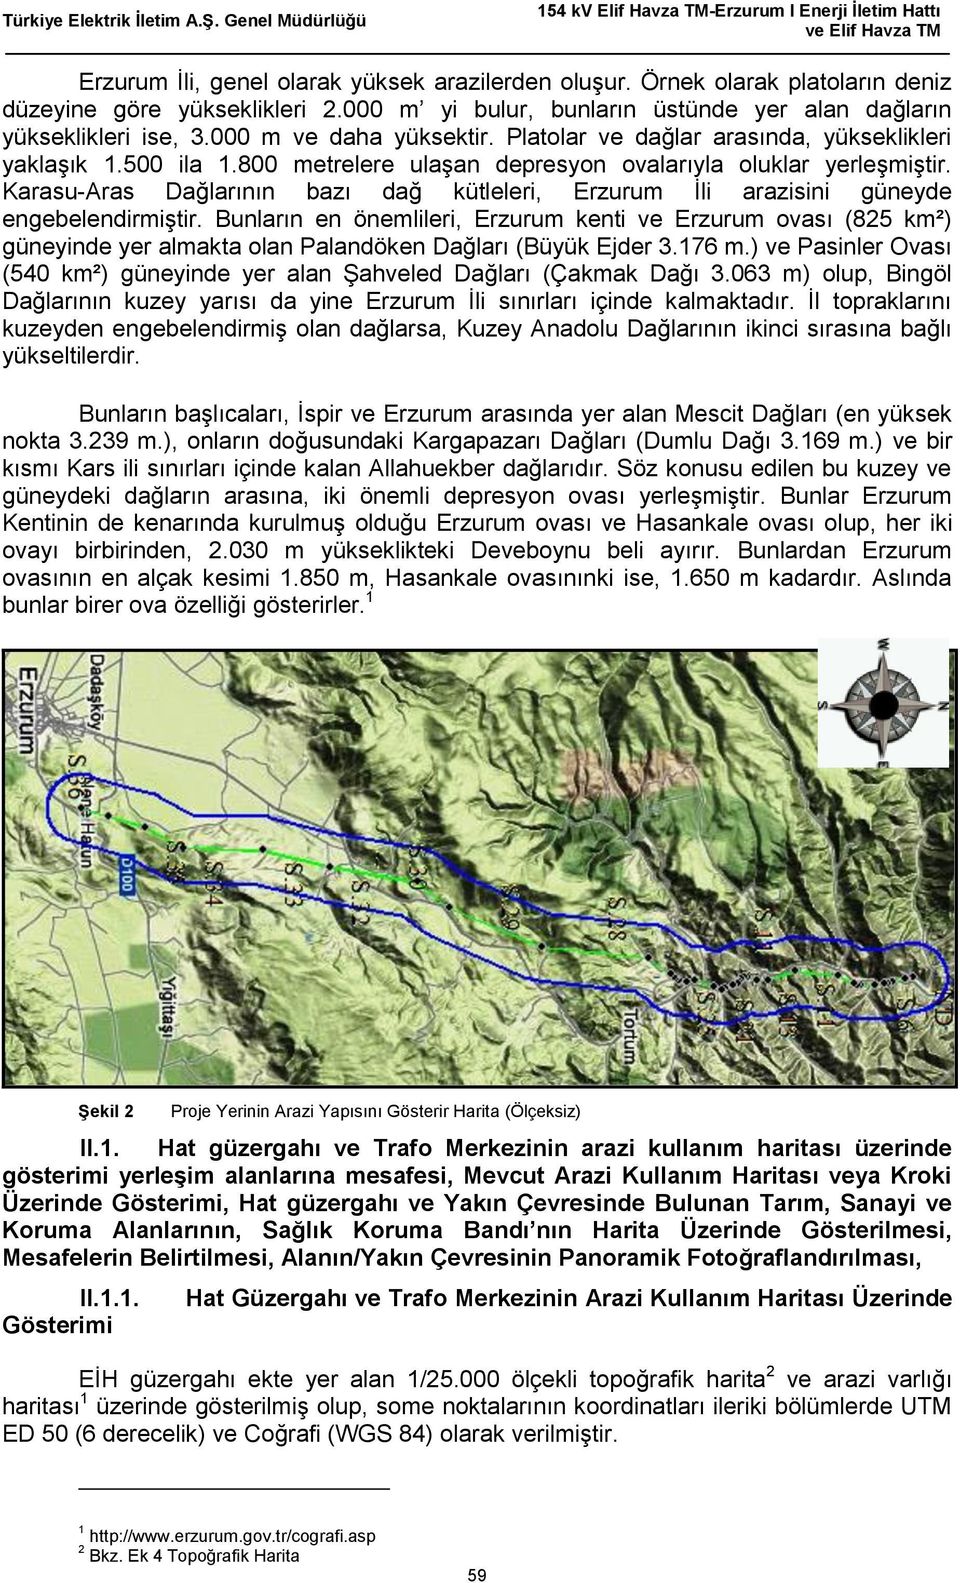 Karasu-Aras Dağlarının bazı dağ kütleleri, Erzurum İli arazisini güneyde engebelendirmiştir.